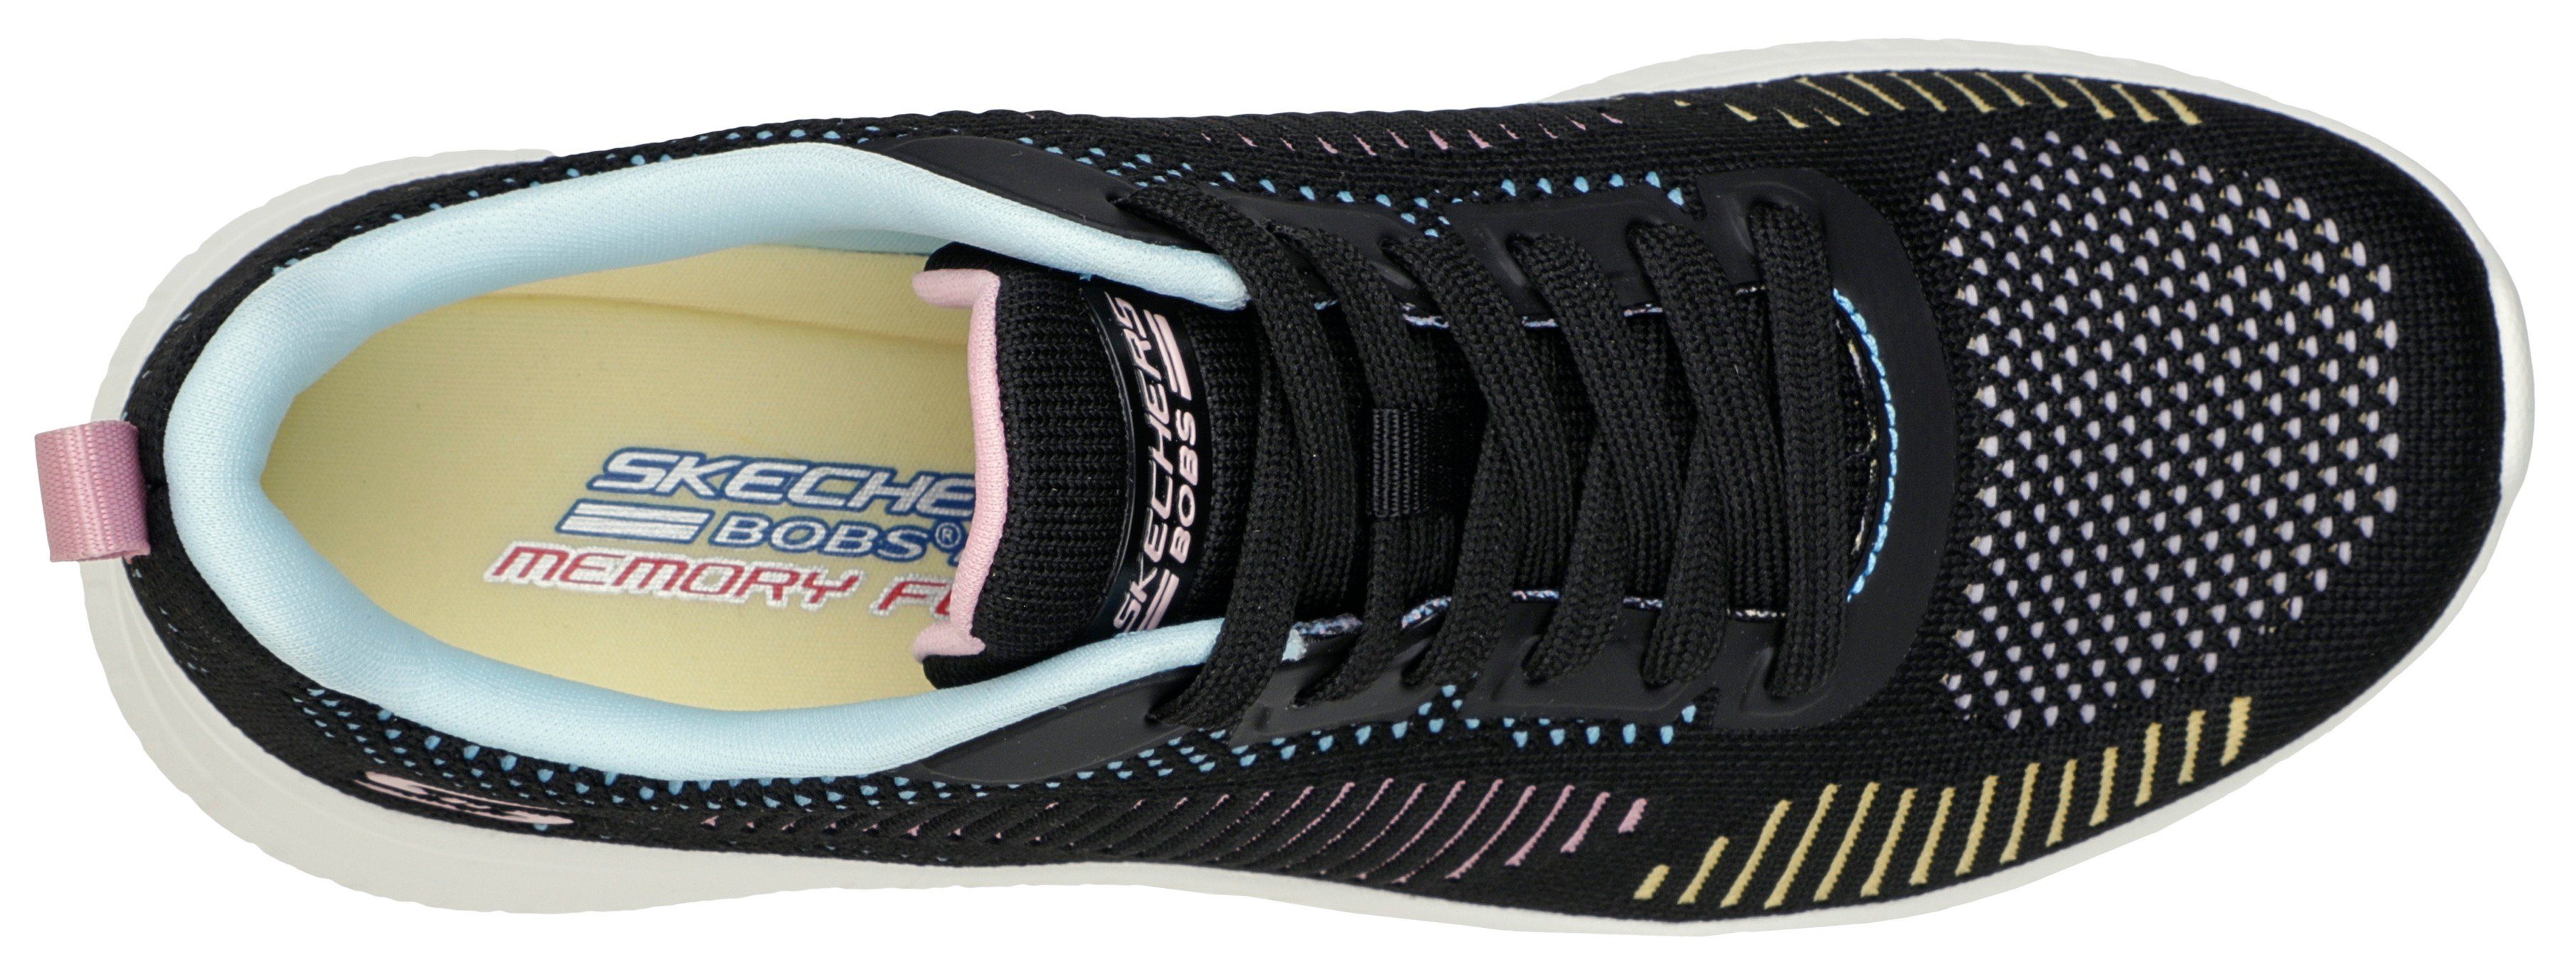 toller CRUSH Farbkombi multi-schwarz CHAOS BOBS COLOR in SQUAD Sneaker Skechers